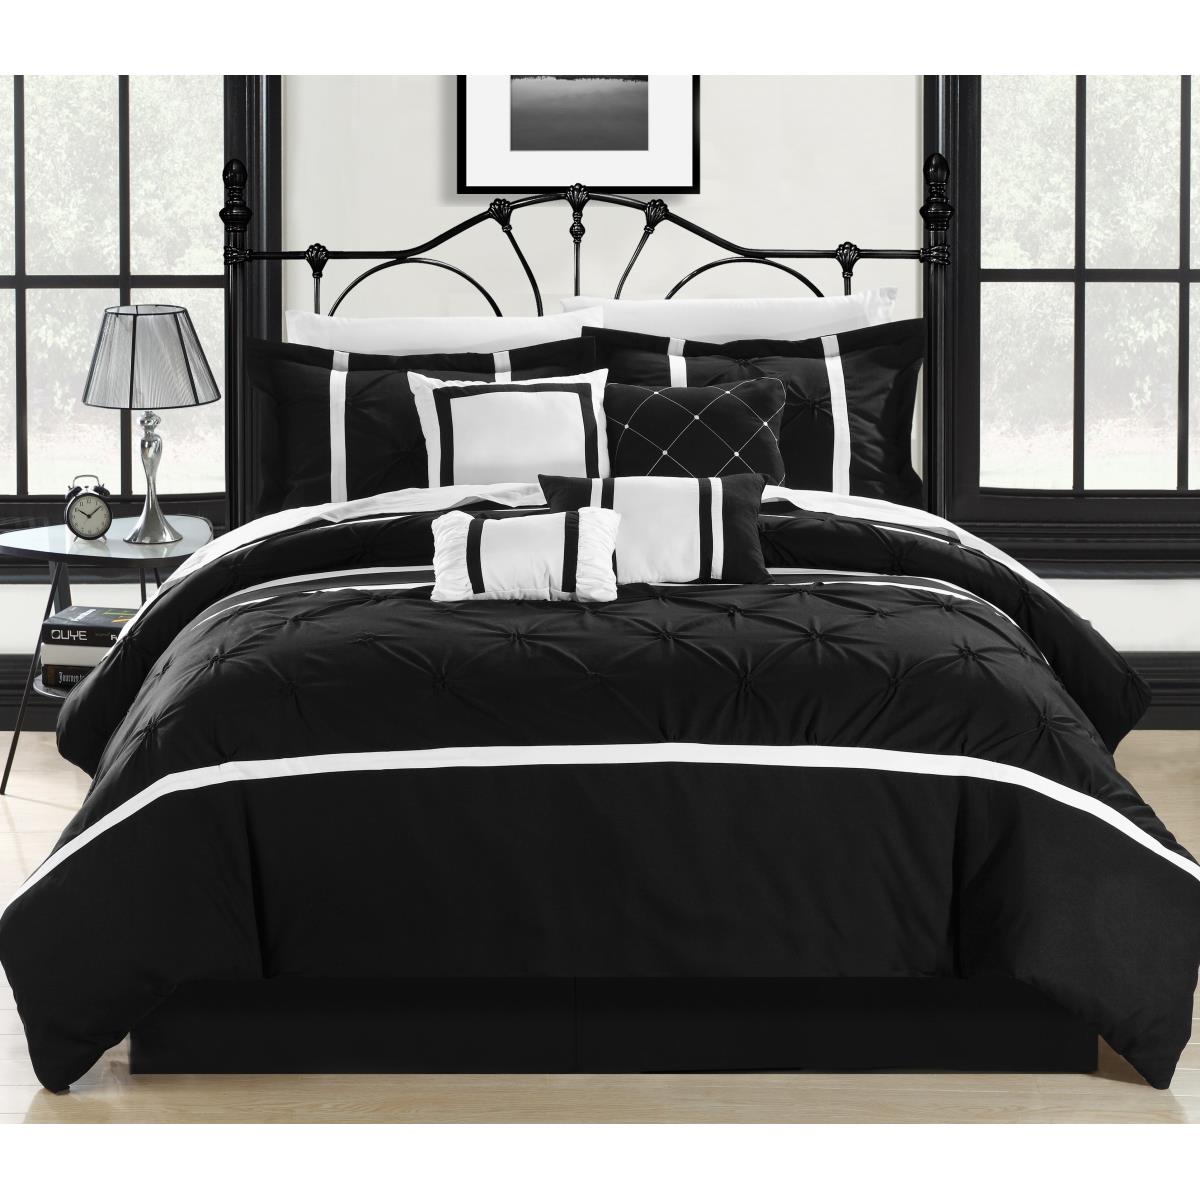 127cq112-us Comforter Set - Black, Vermont & White - Queen - 8 Piece